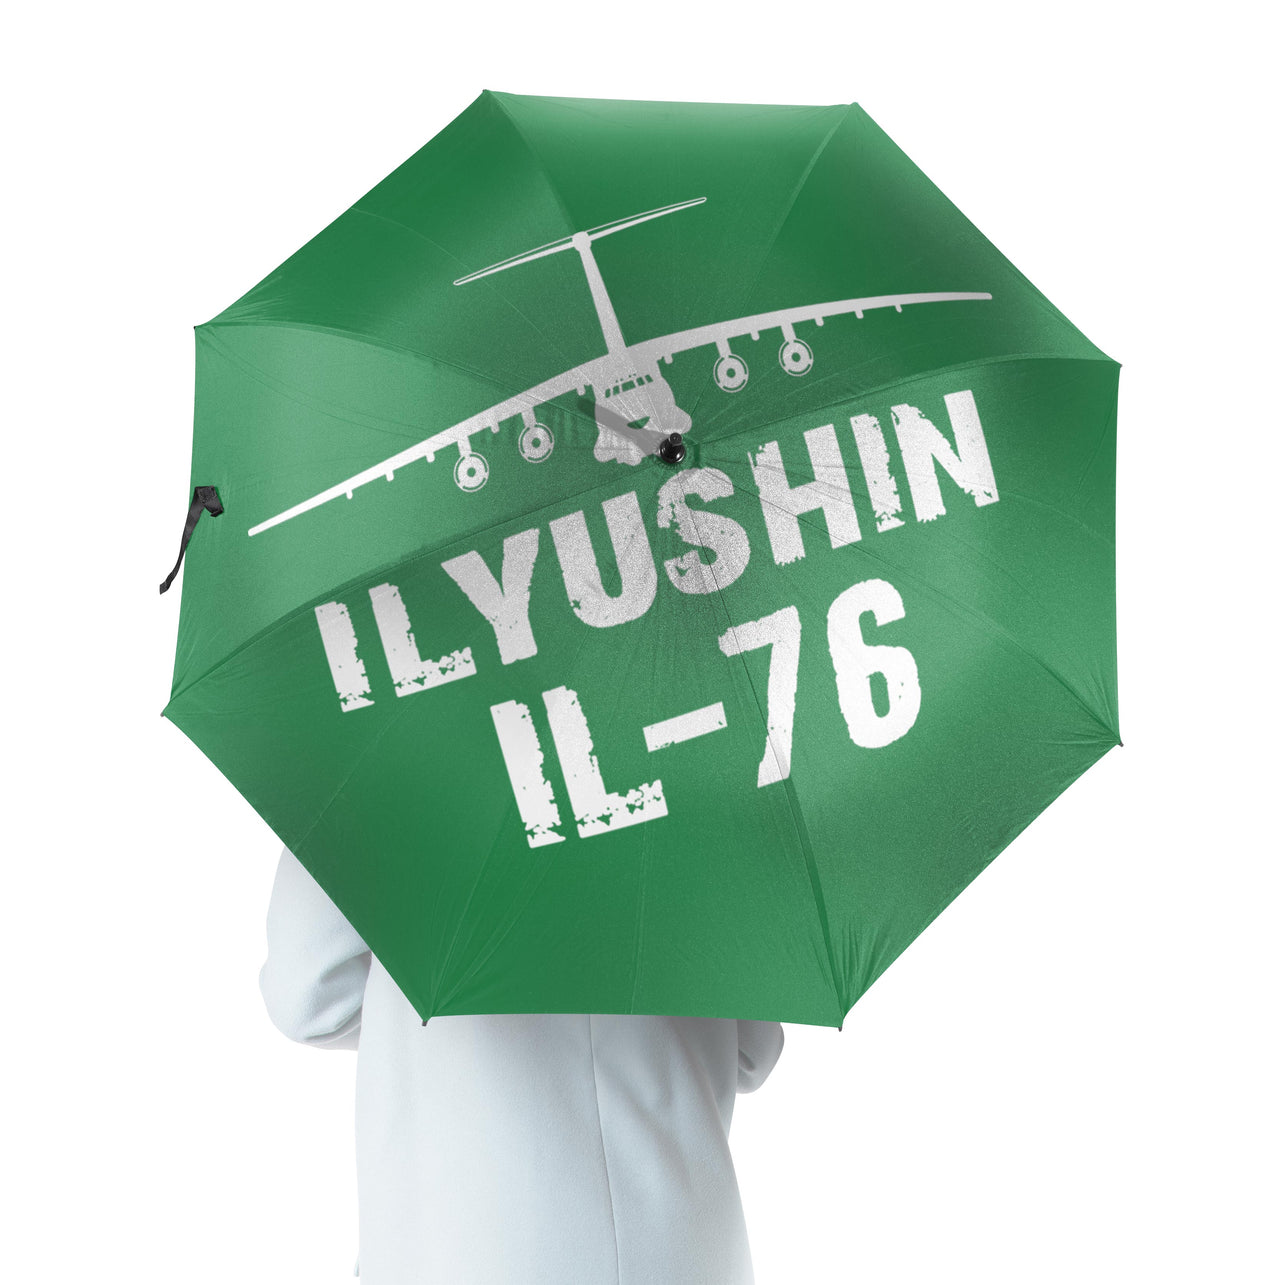 ILyushin IL-76 & Plane Designed Umbrella